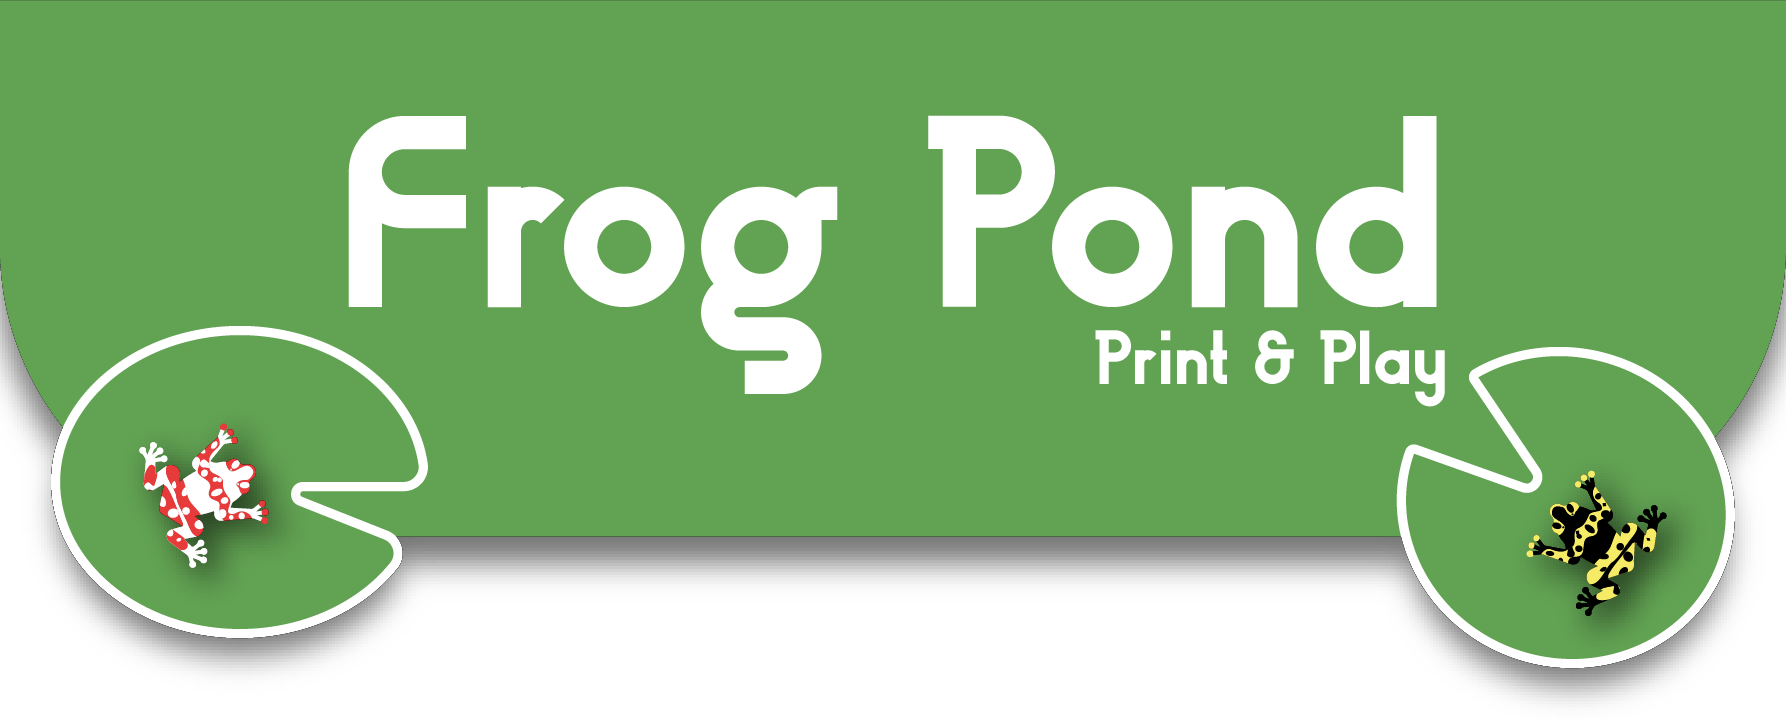 Frog Pond: Print & Play!